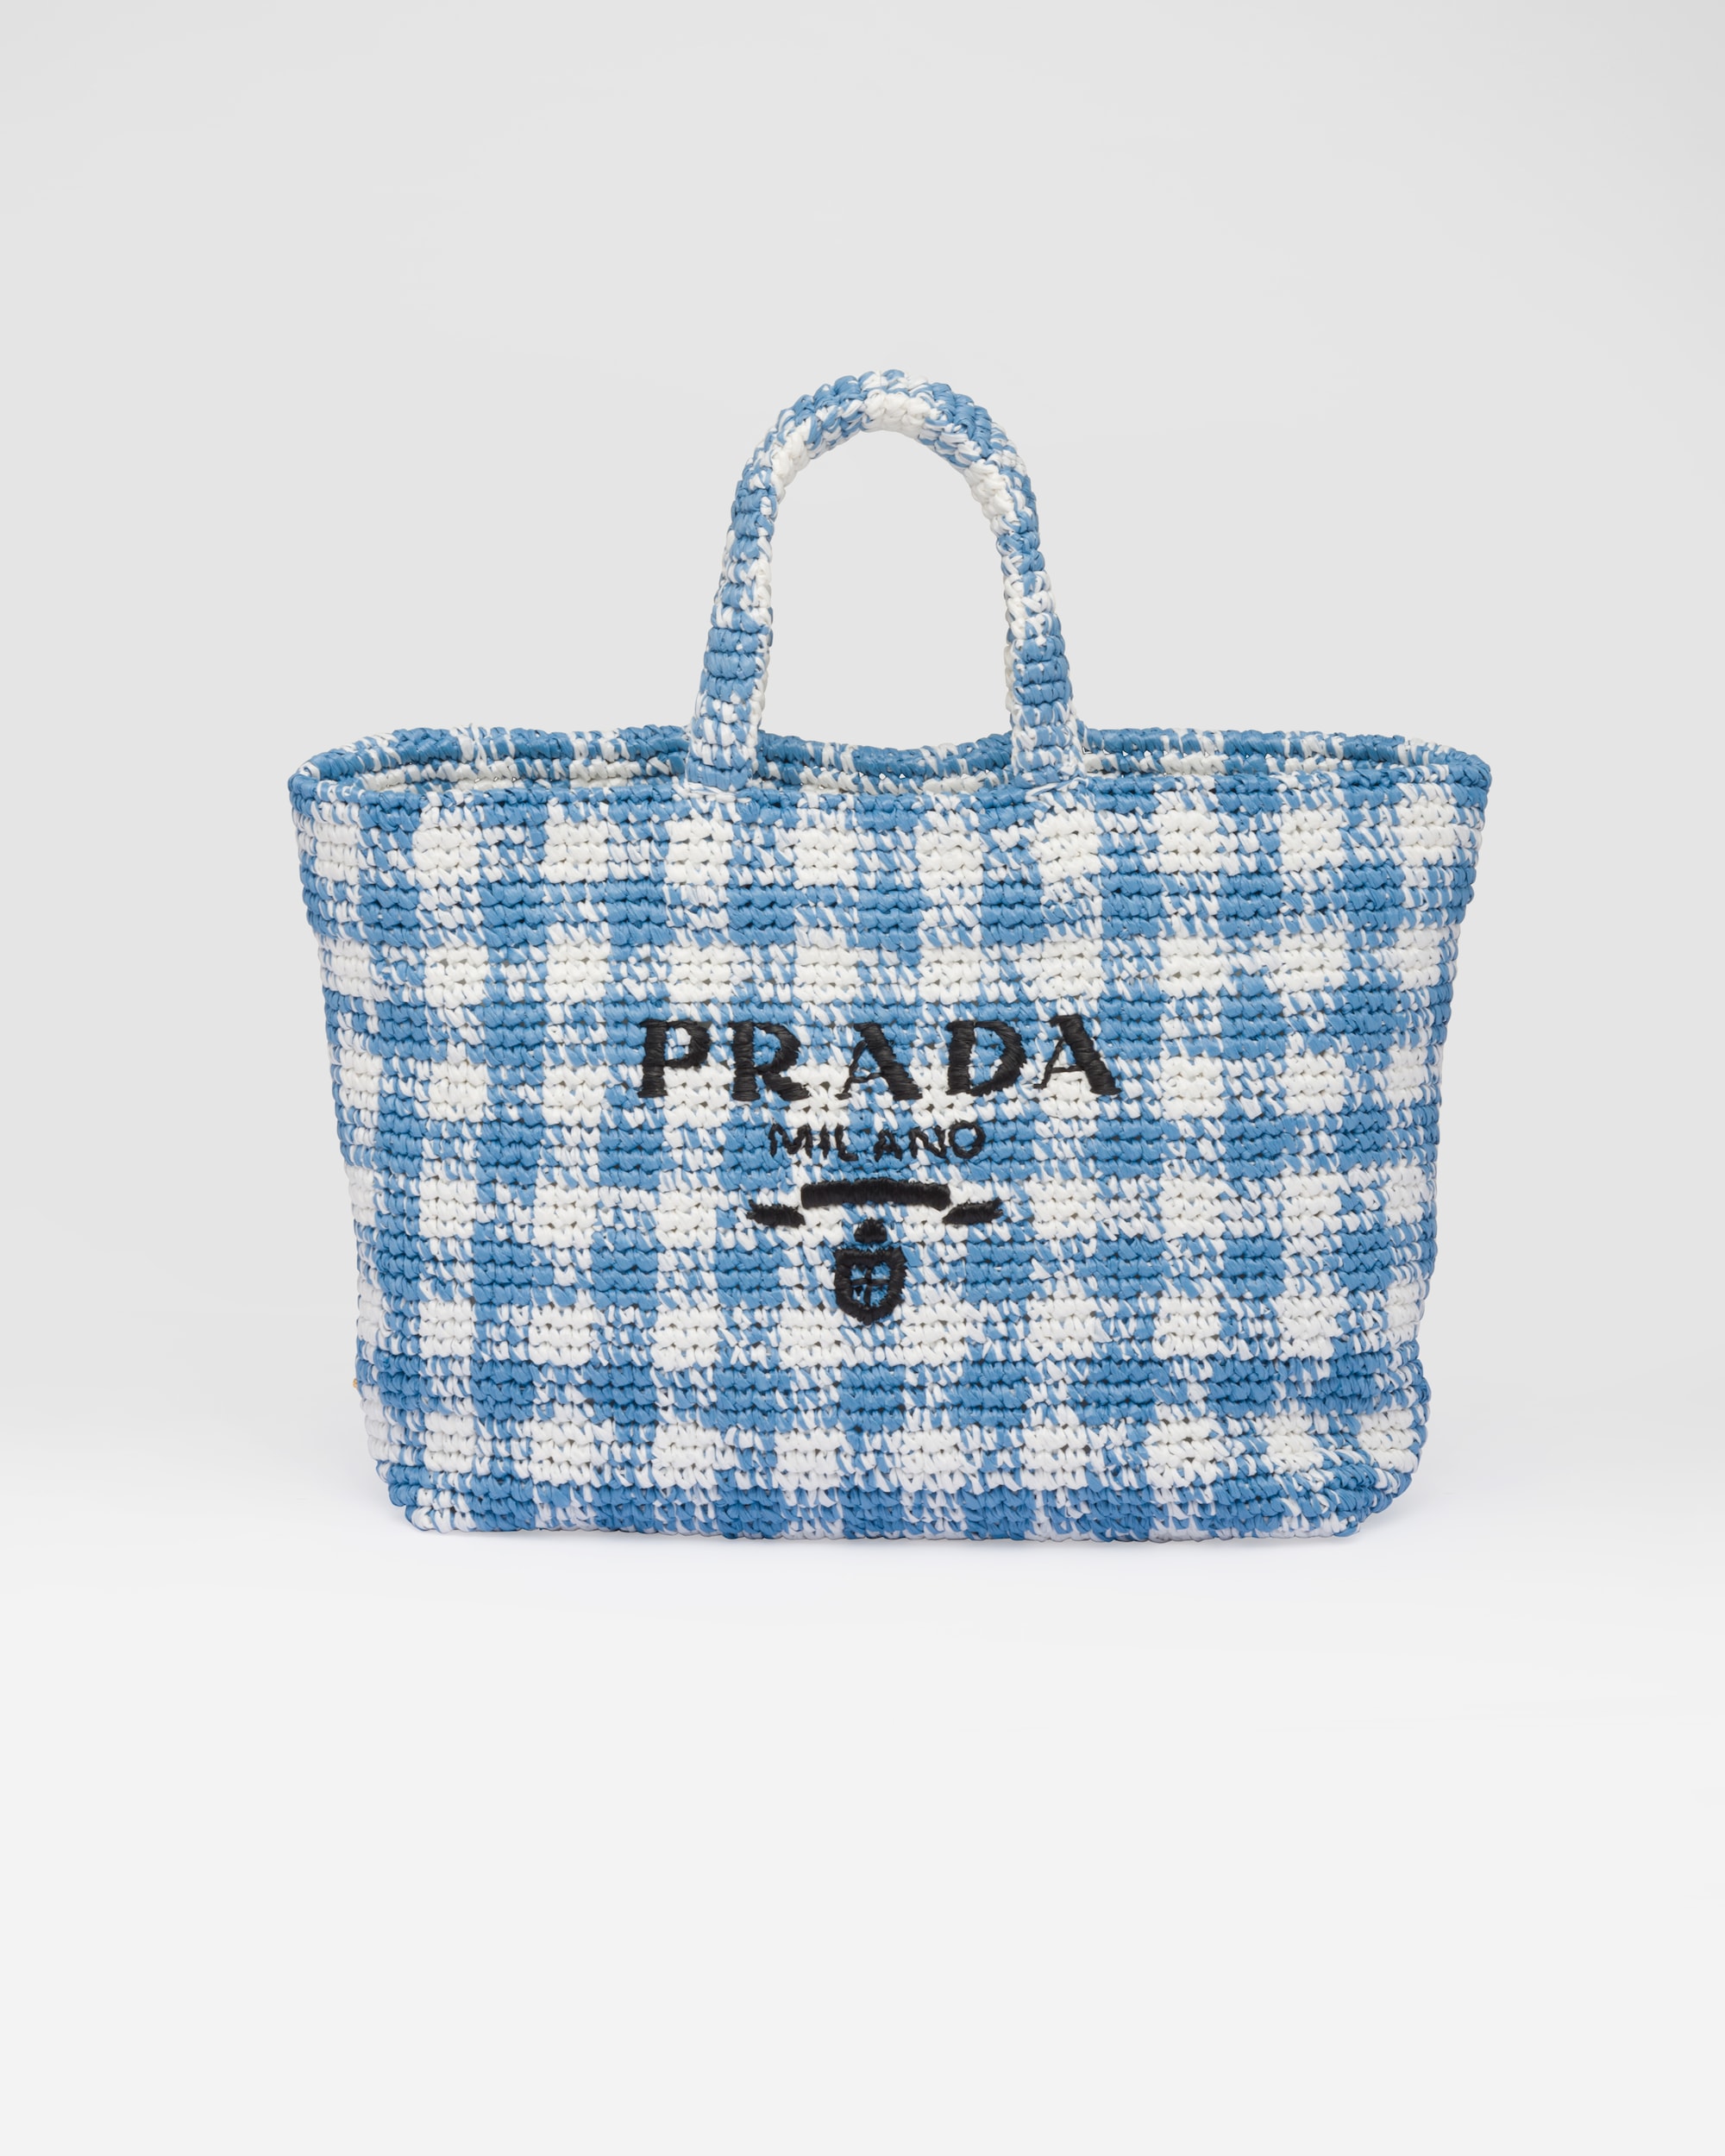 Prada logo-print short-sleeve T-shirt